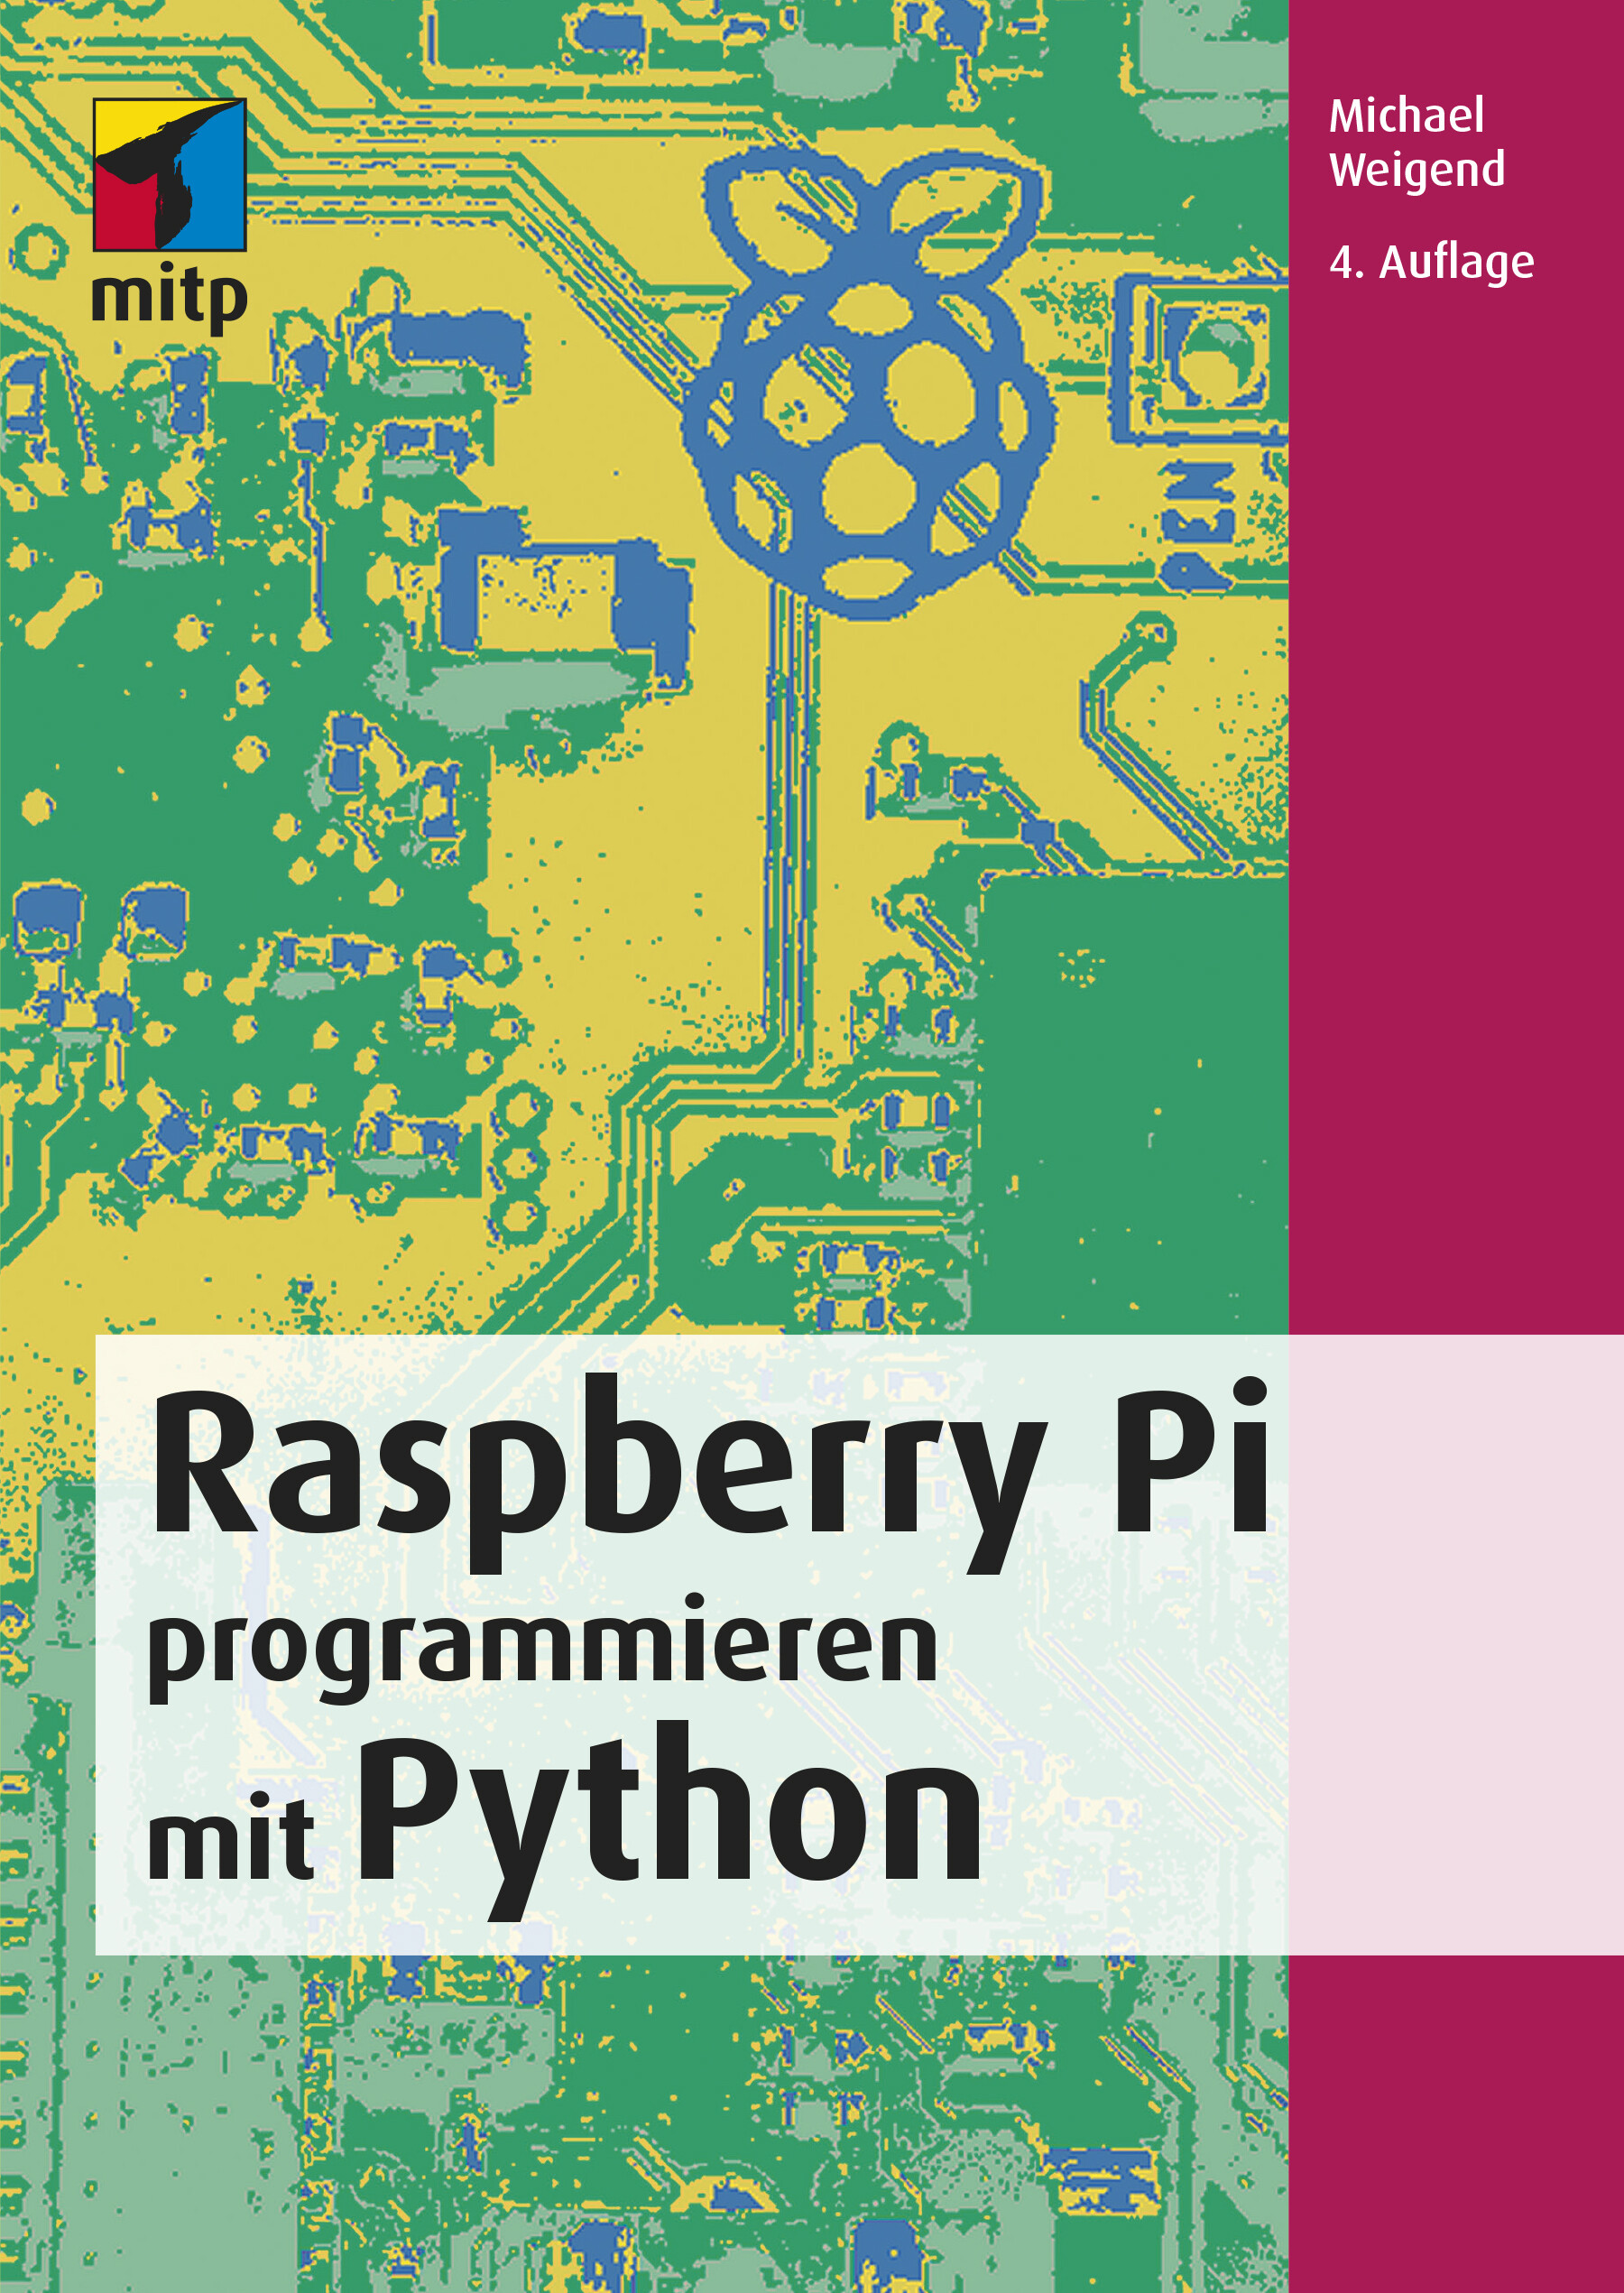 Raspberry Pi programmieren mit Python (4. Auflg.)